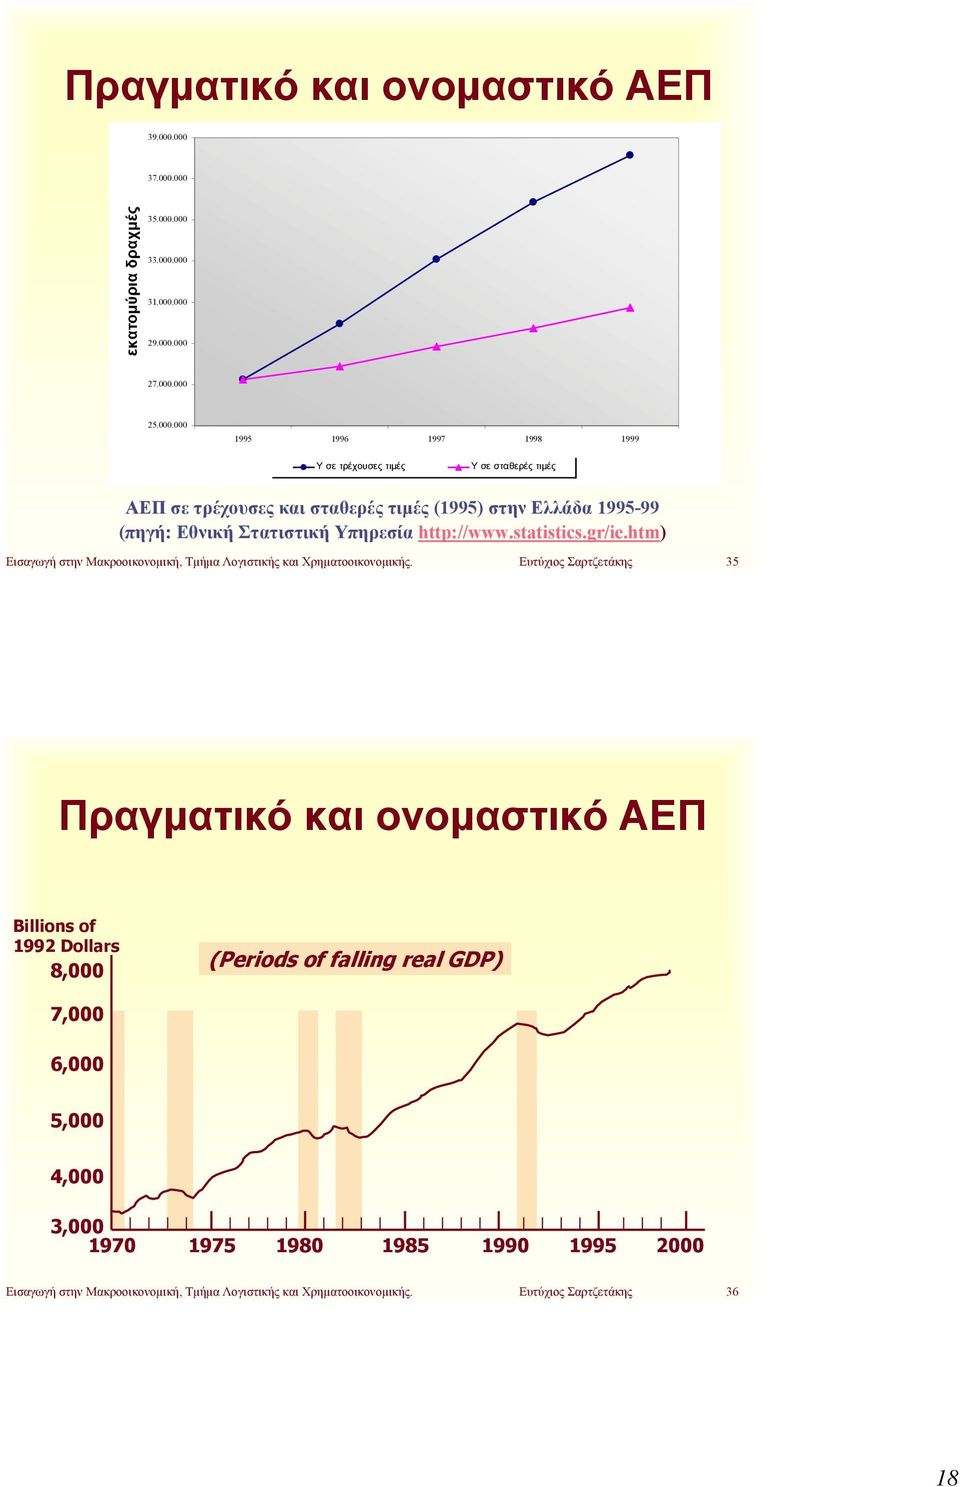 σε τρέχουσες και σταθερές τιμές (1995) στην Ελλάδα 1995-99 (πηγή: Εθνική Στατιστική Υπηρεσία http://www.statistics.gr/ie.